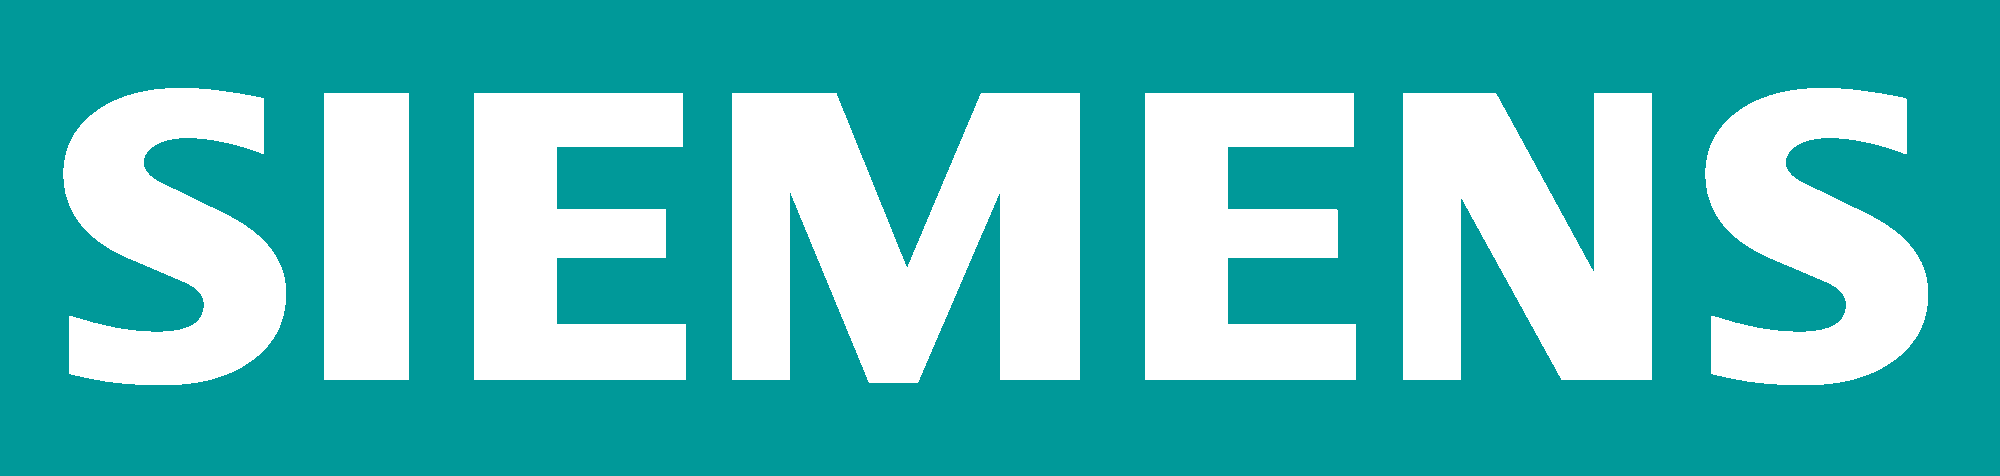 Siemens Logo - Siemens Behind